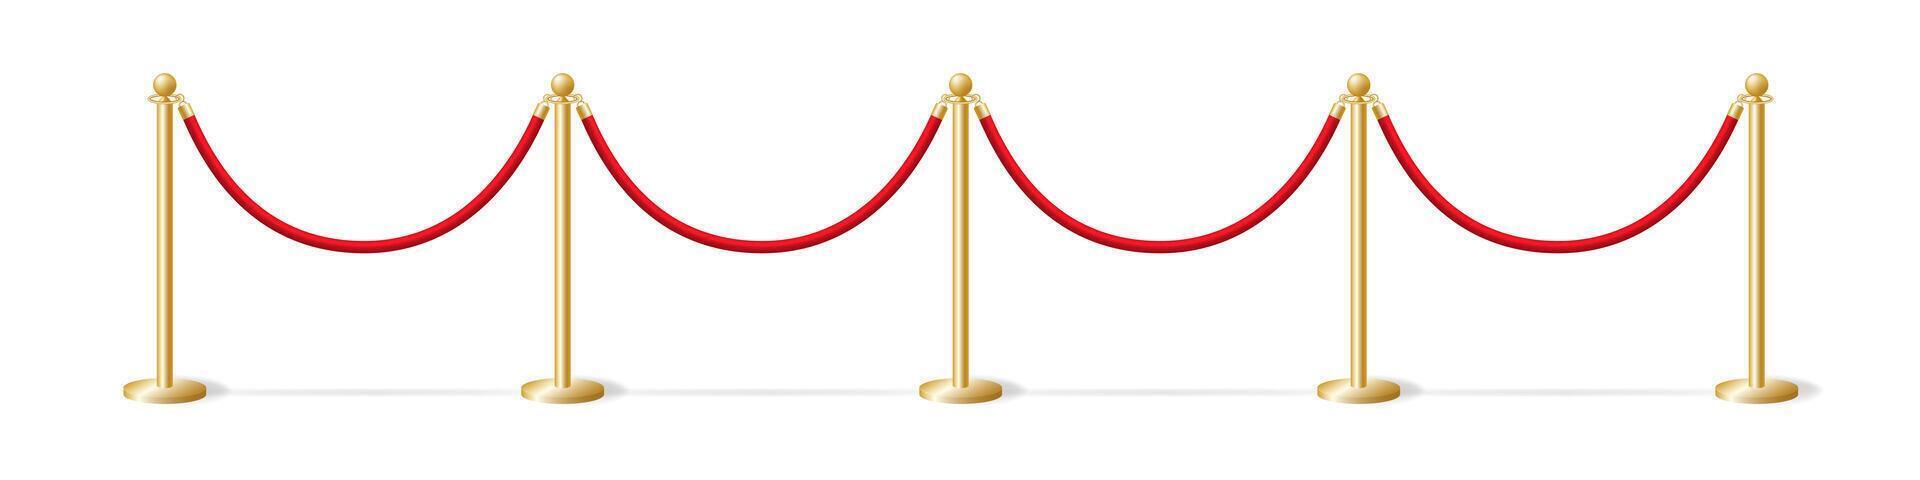 grandes esgrima ouro postes de amarração com vermelho corda modelo. segurança barreira às solene cerimônias e eventos. Atenção a partir de segurança serviço este passagem é fechadas vetor